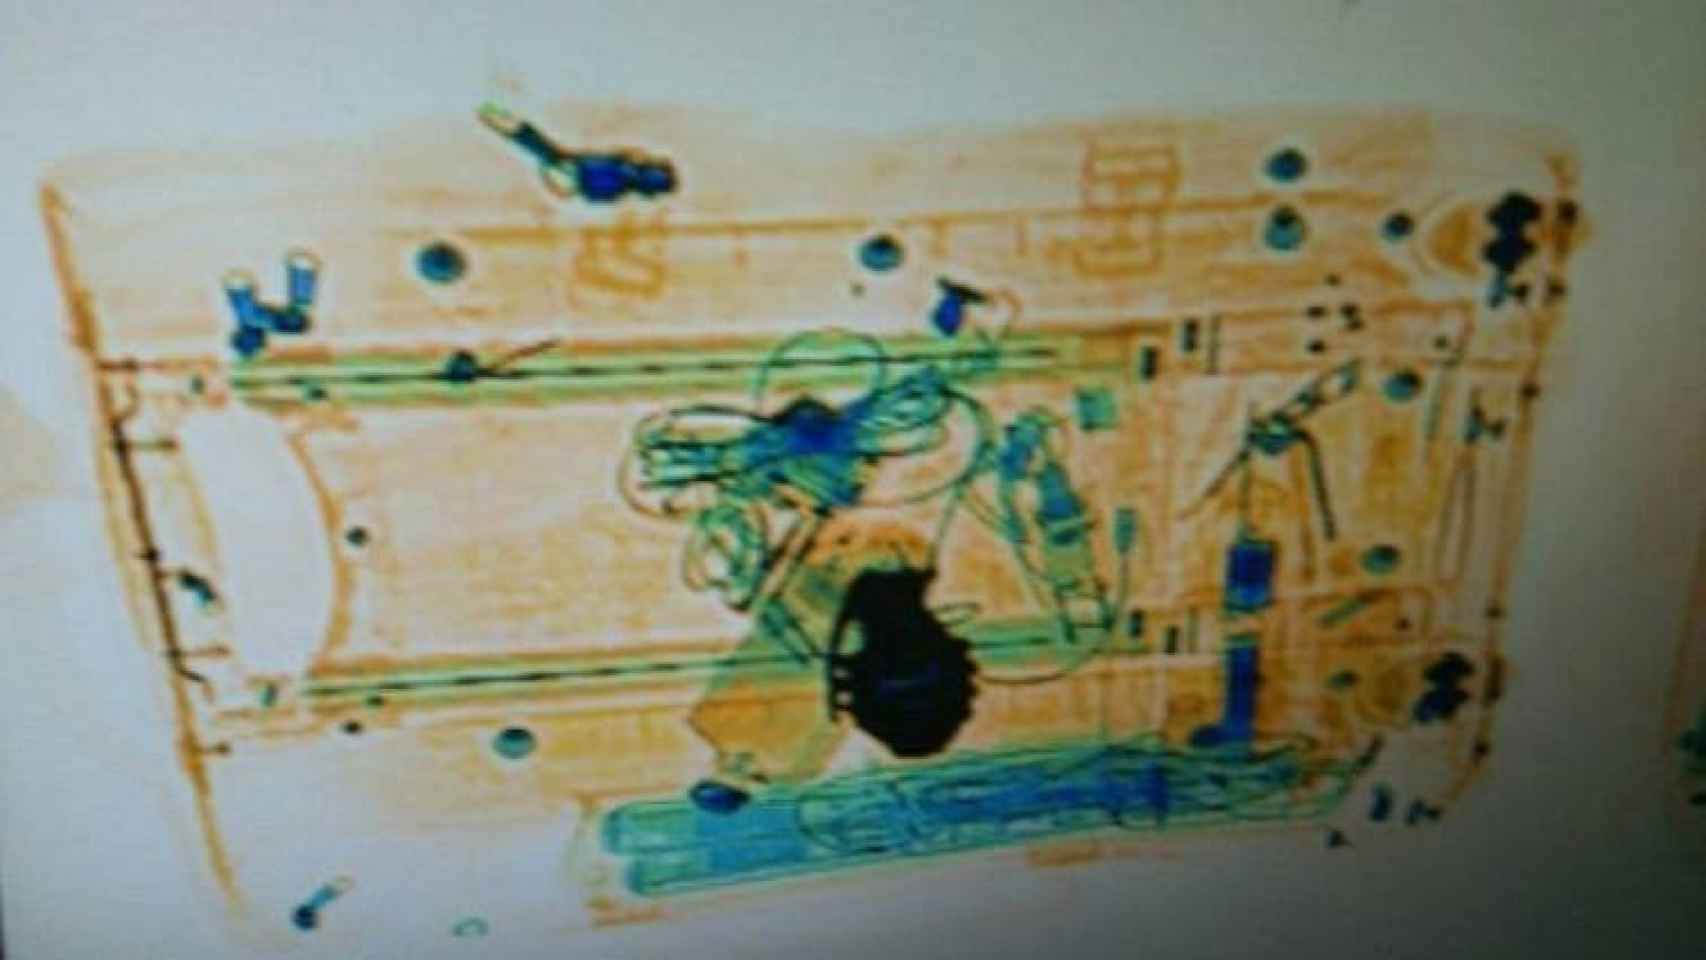 Imagen escaneada del supuesto explosivo que era en realidad la hebilla de un cinturón con forma de granada / EFE